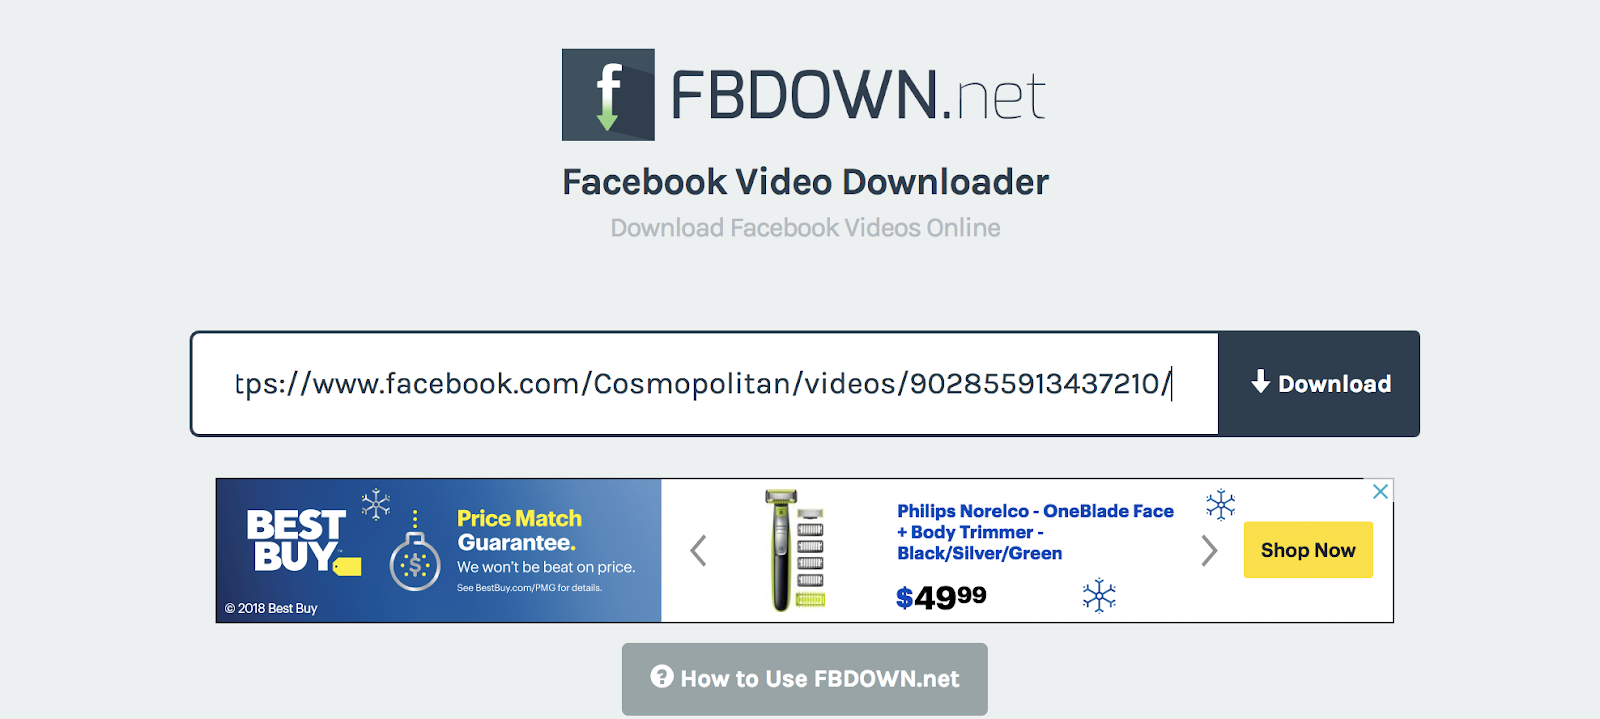 Facebook Video Downloader 6.20.3 download the last version for windows